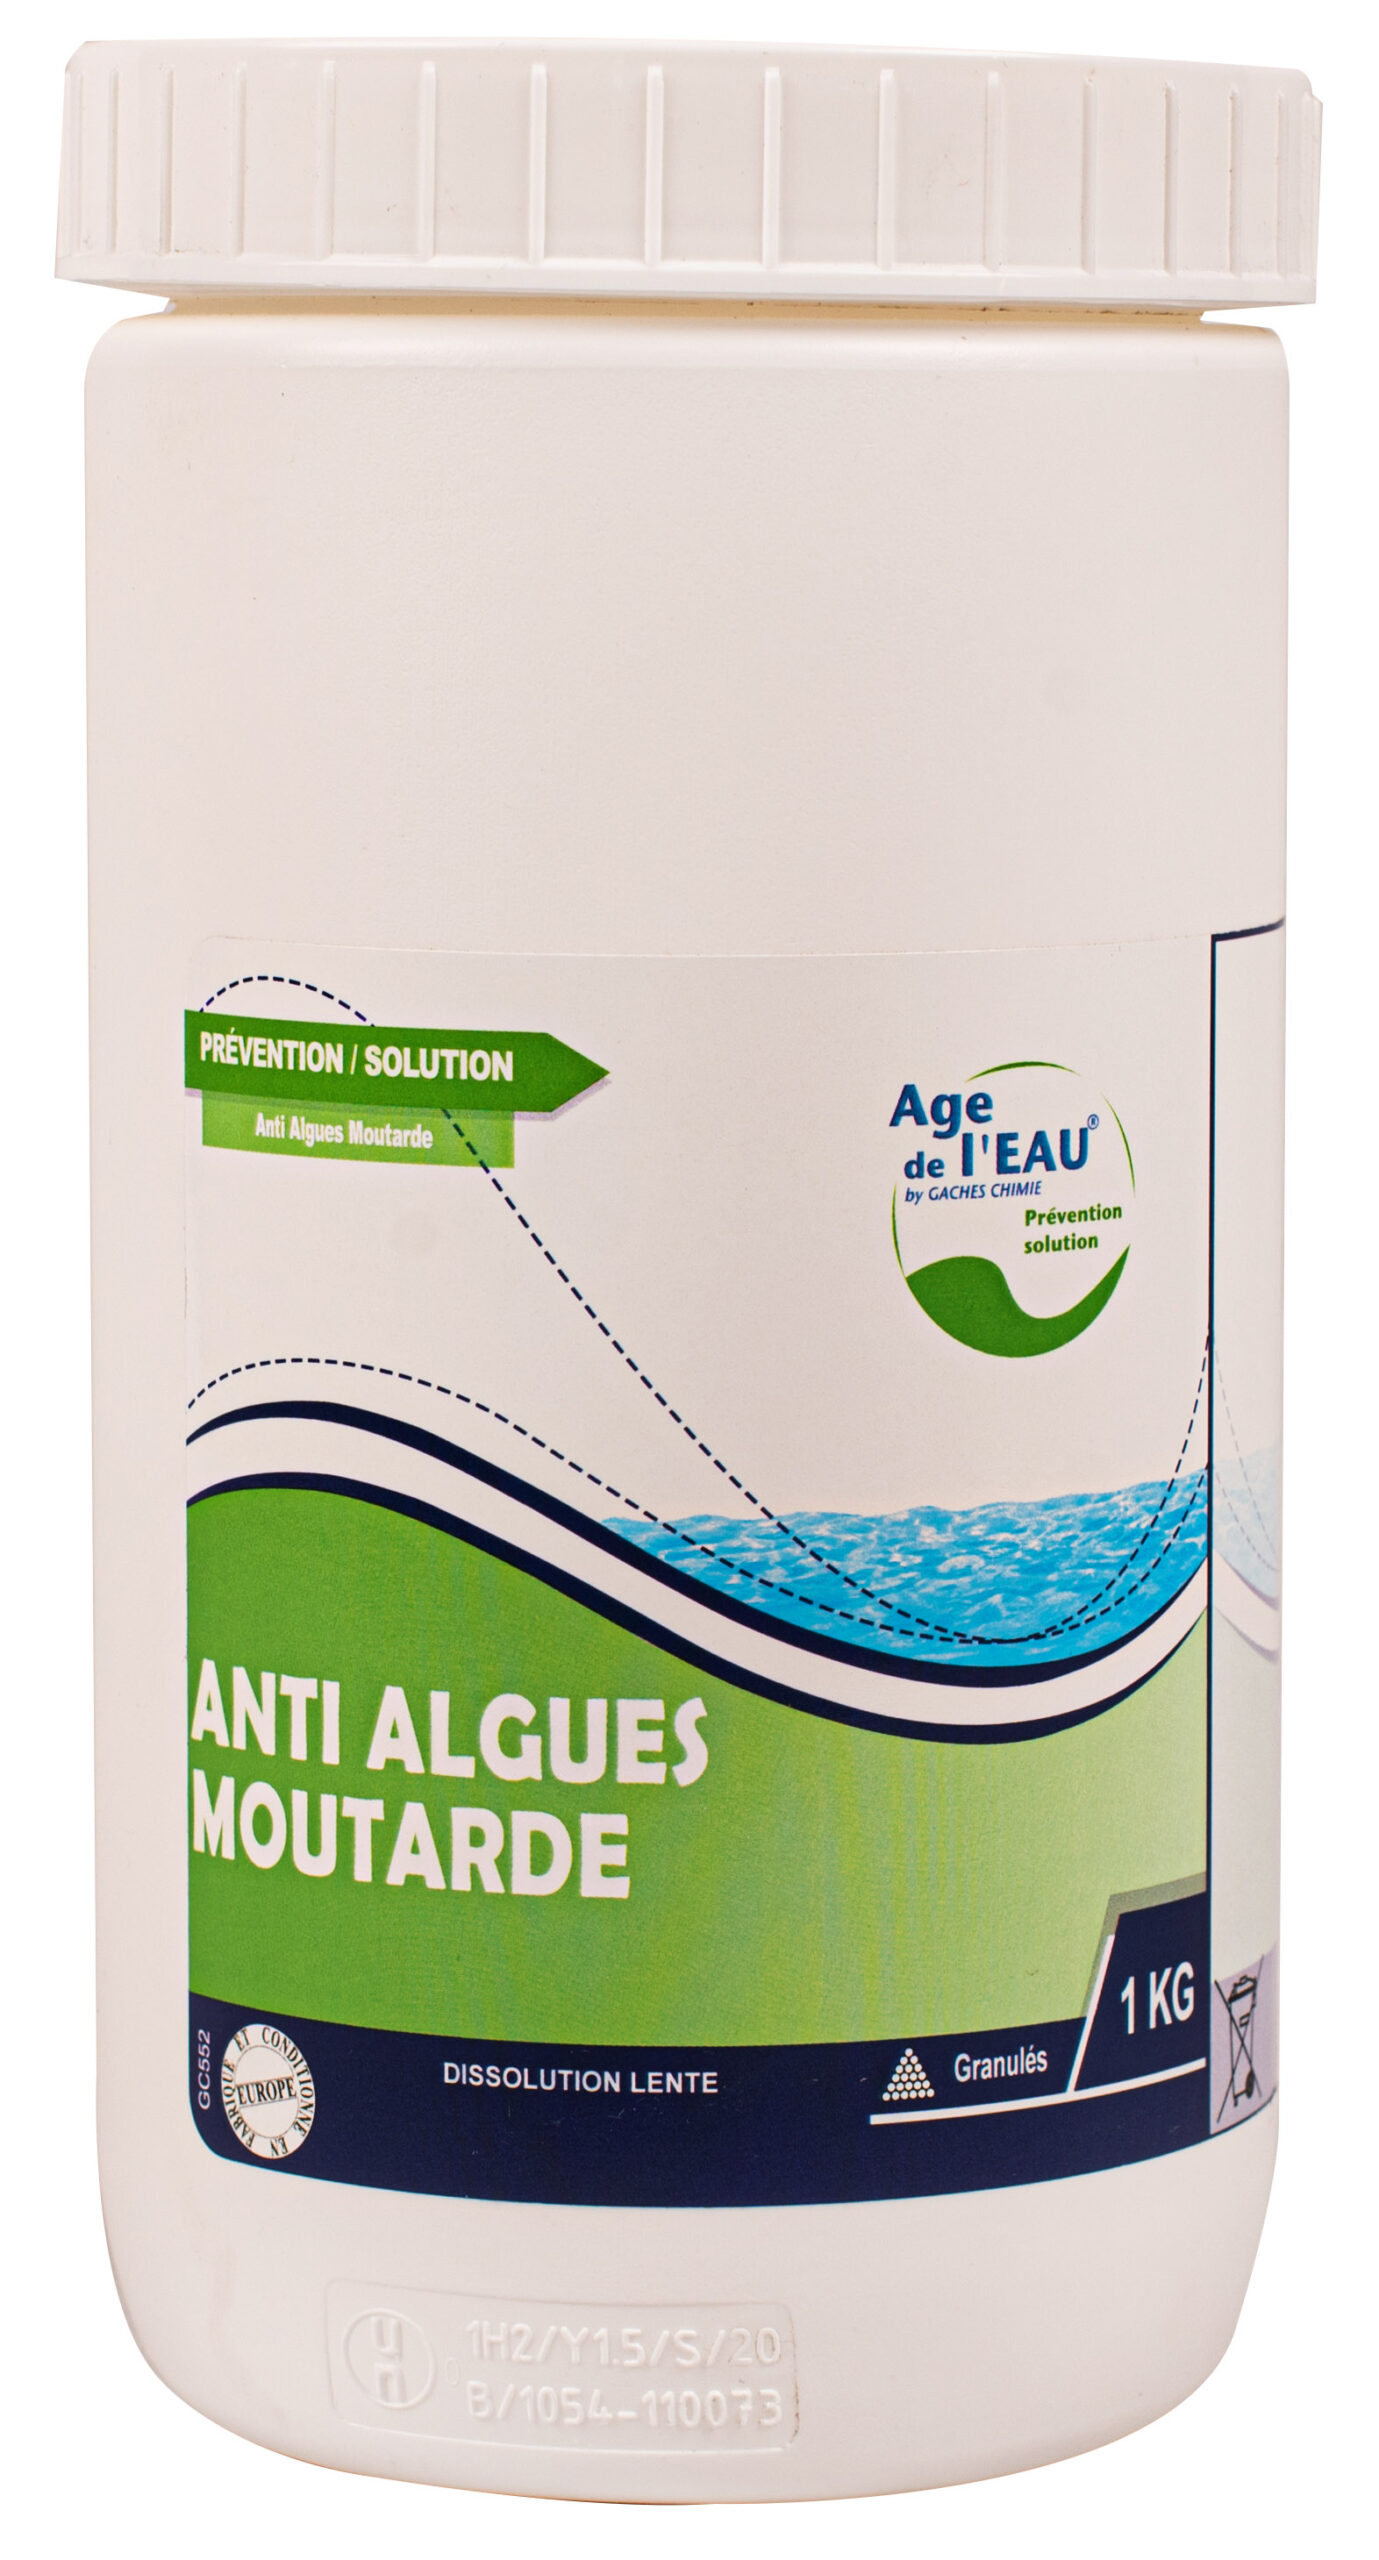 Anti-algue, produit de traitement de l'eau de piscine - Eau'Shop